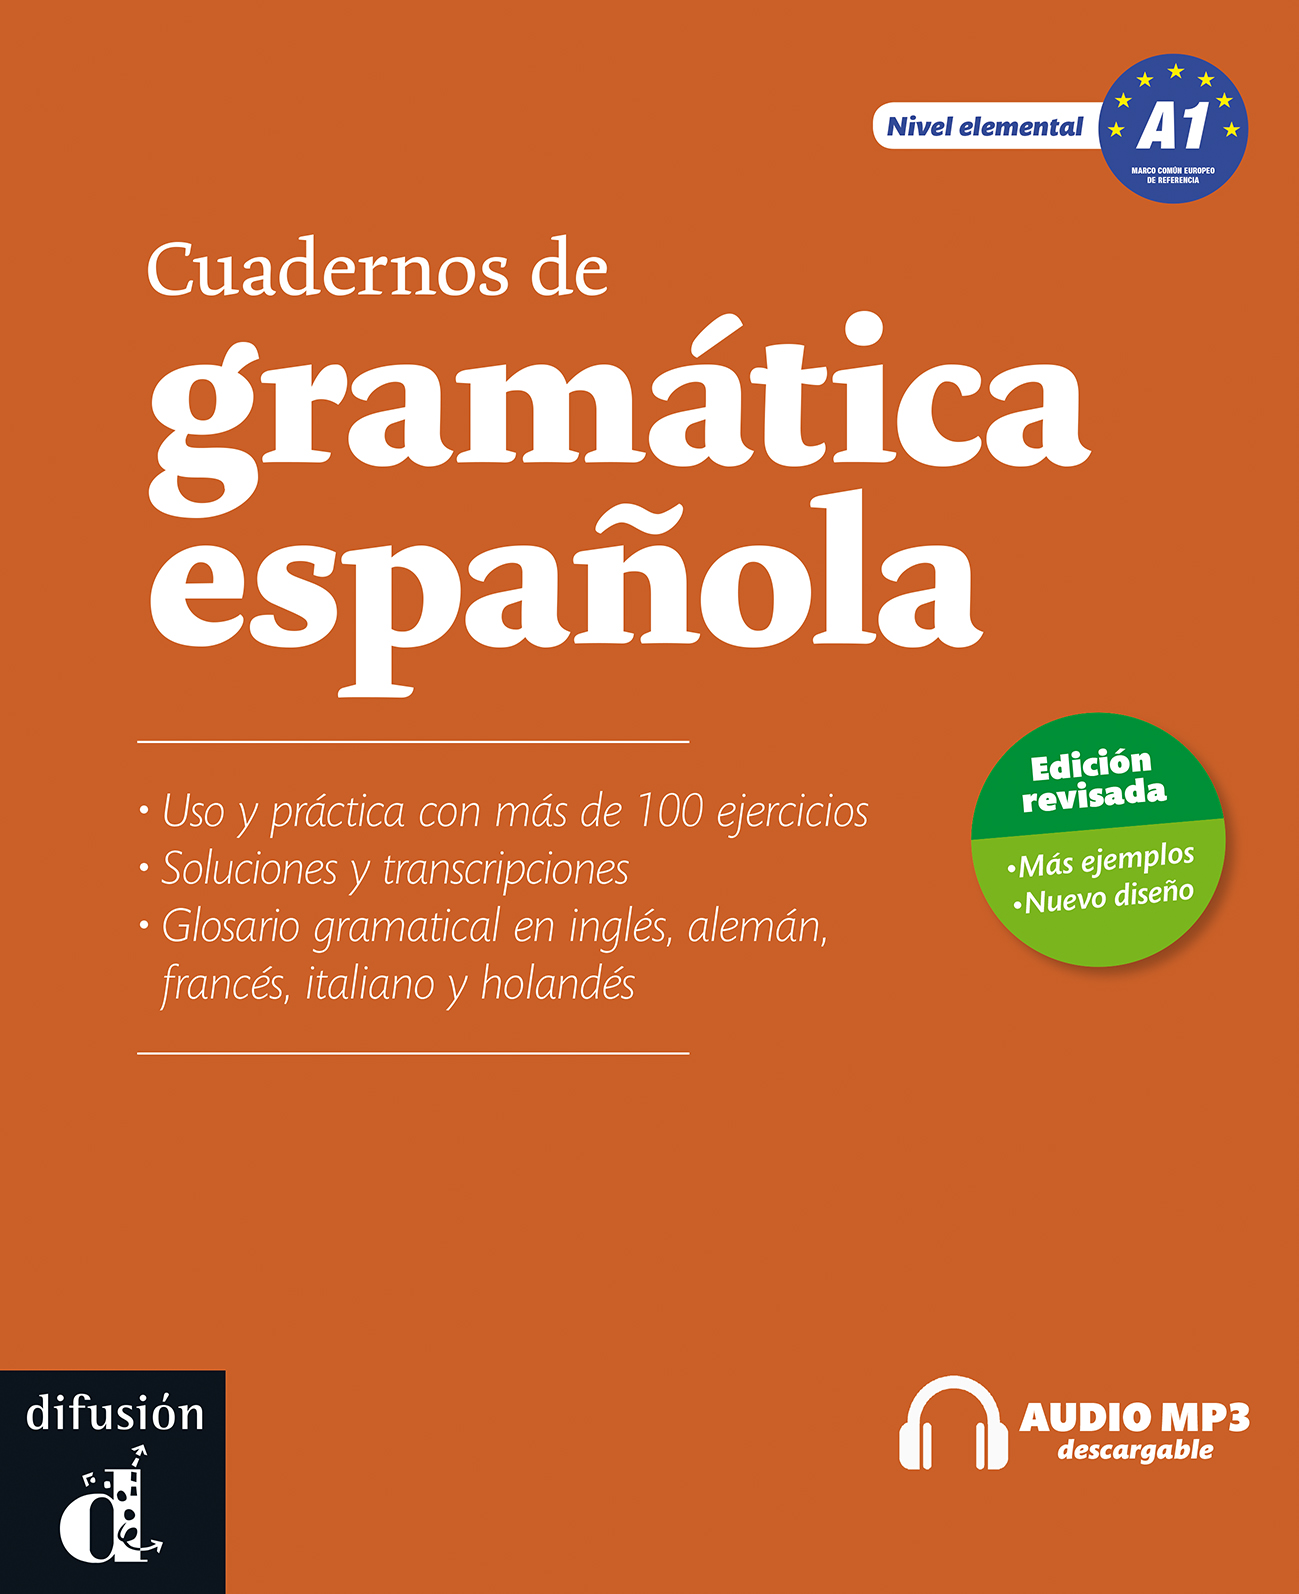 Cuadernos de gramática espanola 1